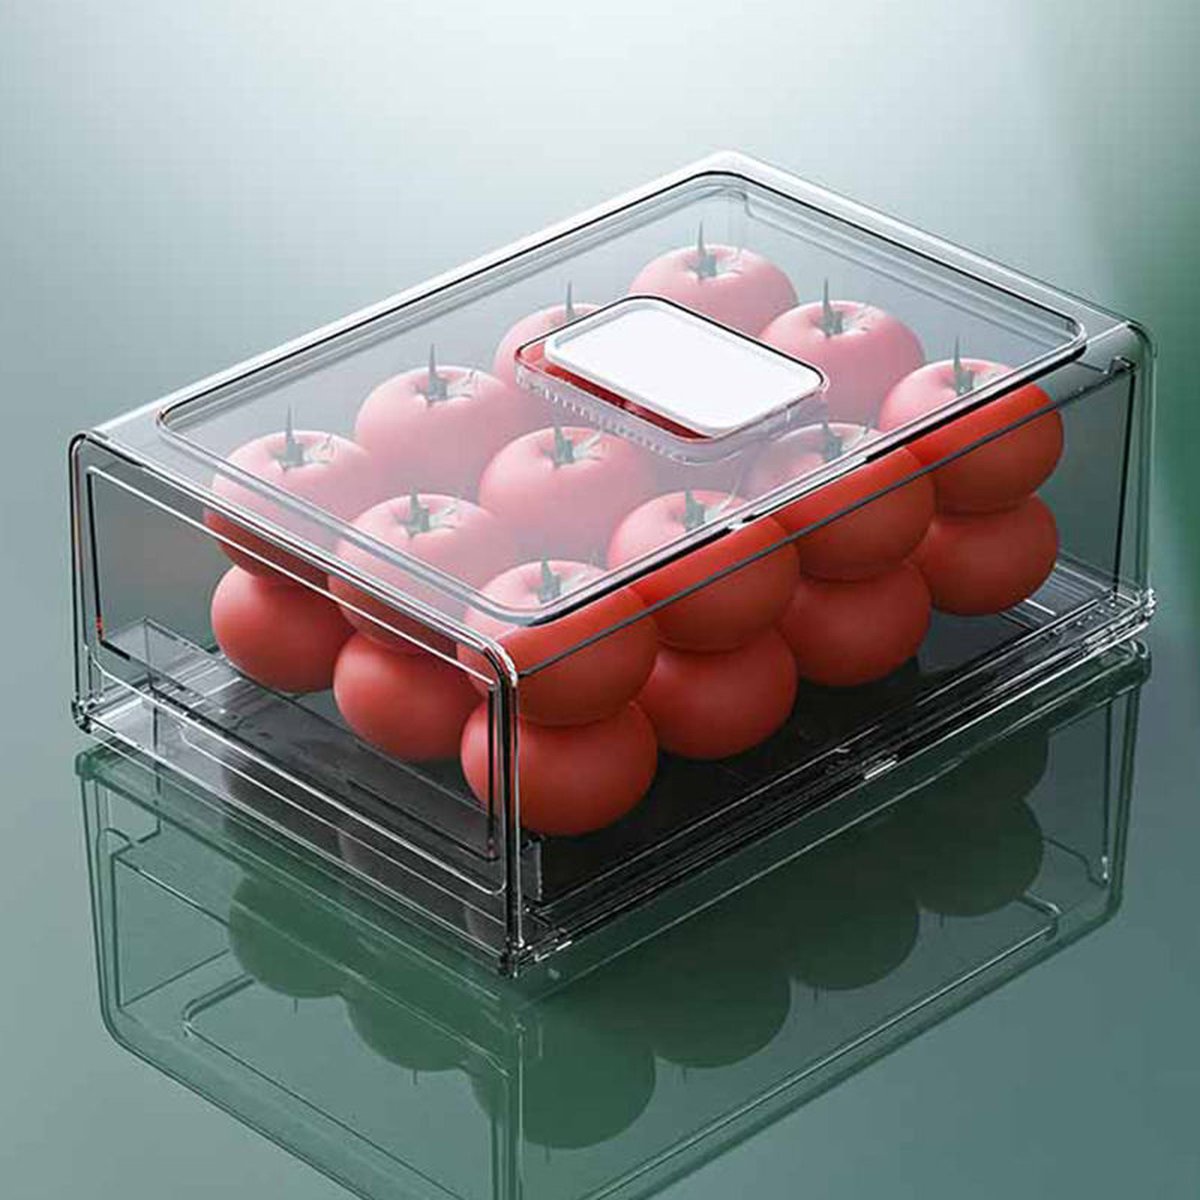 Without Lemon - Premium Koelkast Organizer - met Deksel - Set van 2 Klein - Voorraadbox - Opstapelbaar - Vershoudbox - Schuiflade - extra Lades - Transparant